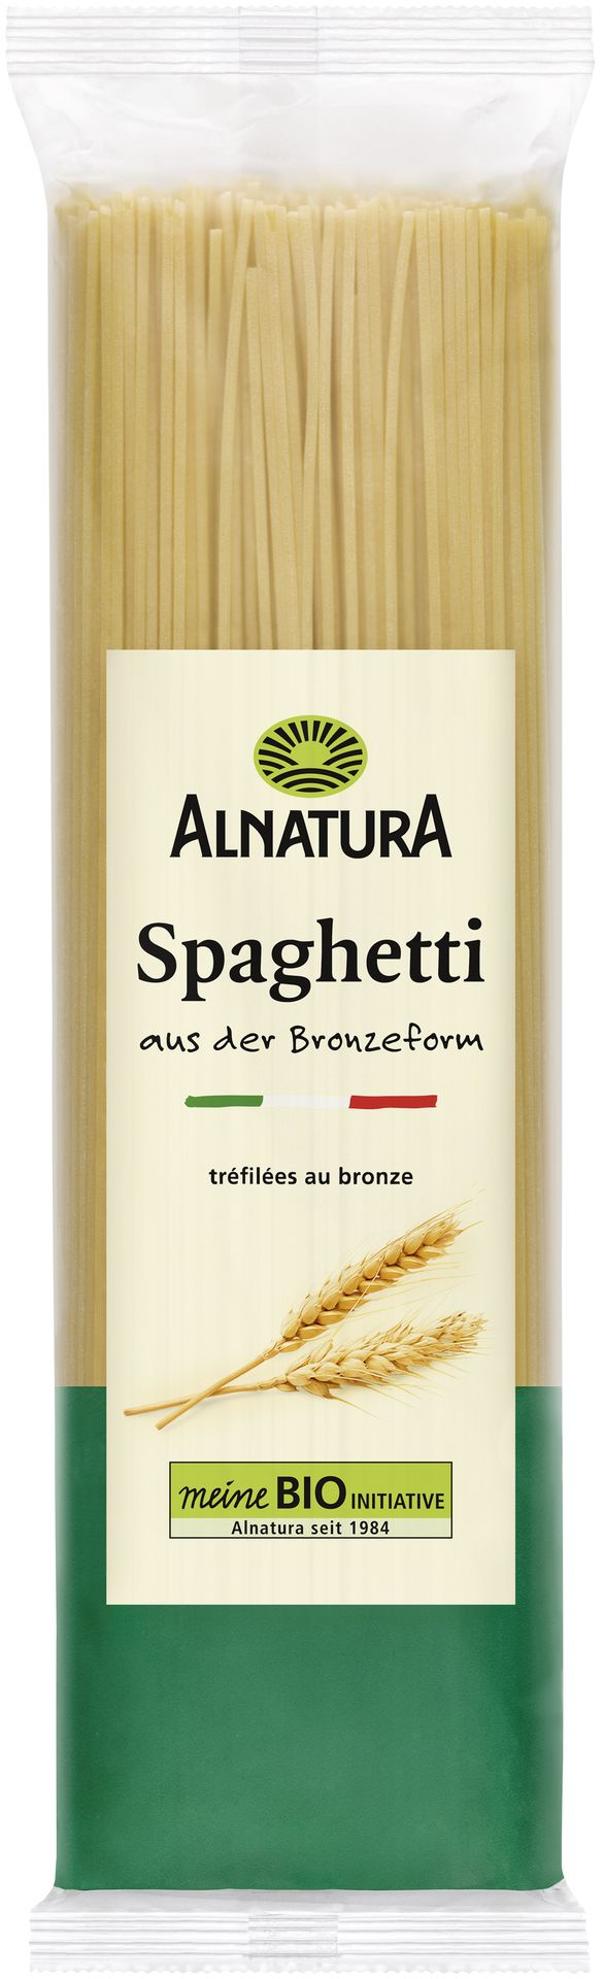 Produktfoto zu Spaghetti 500g  Alnatura